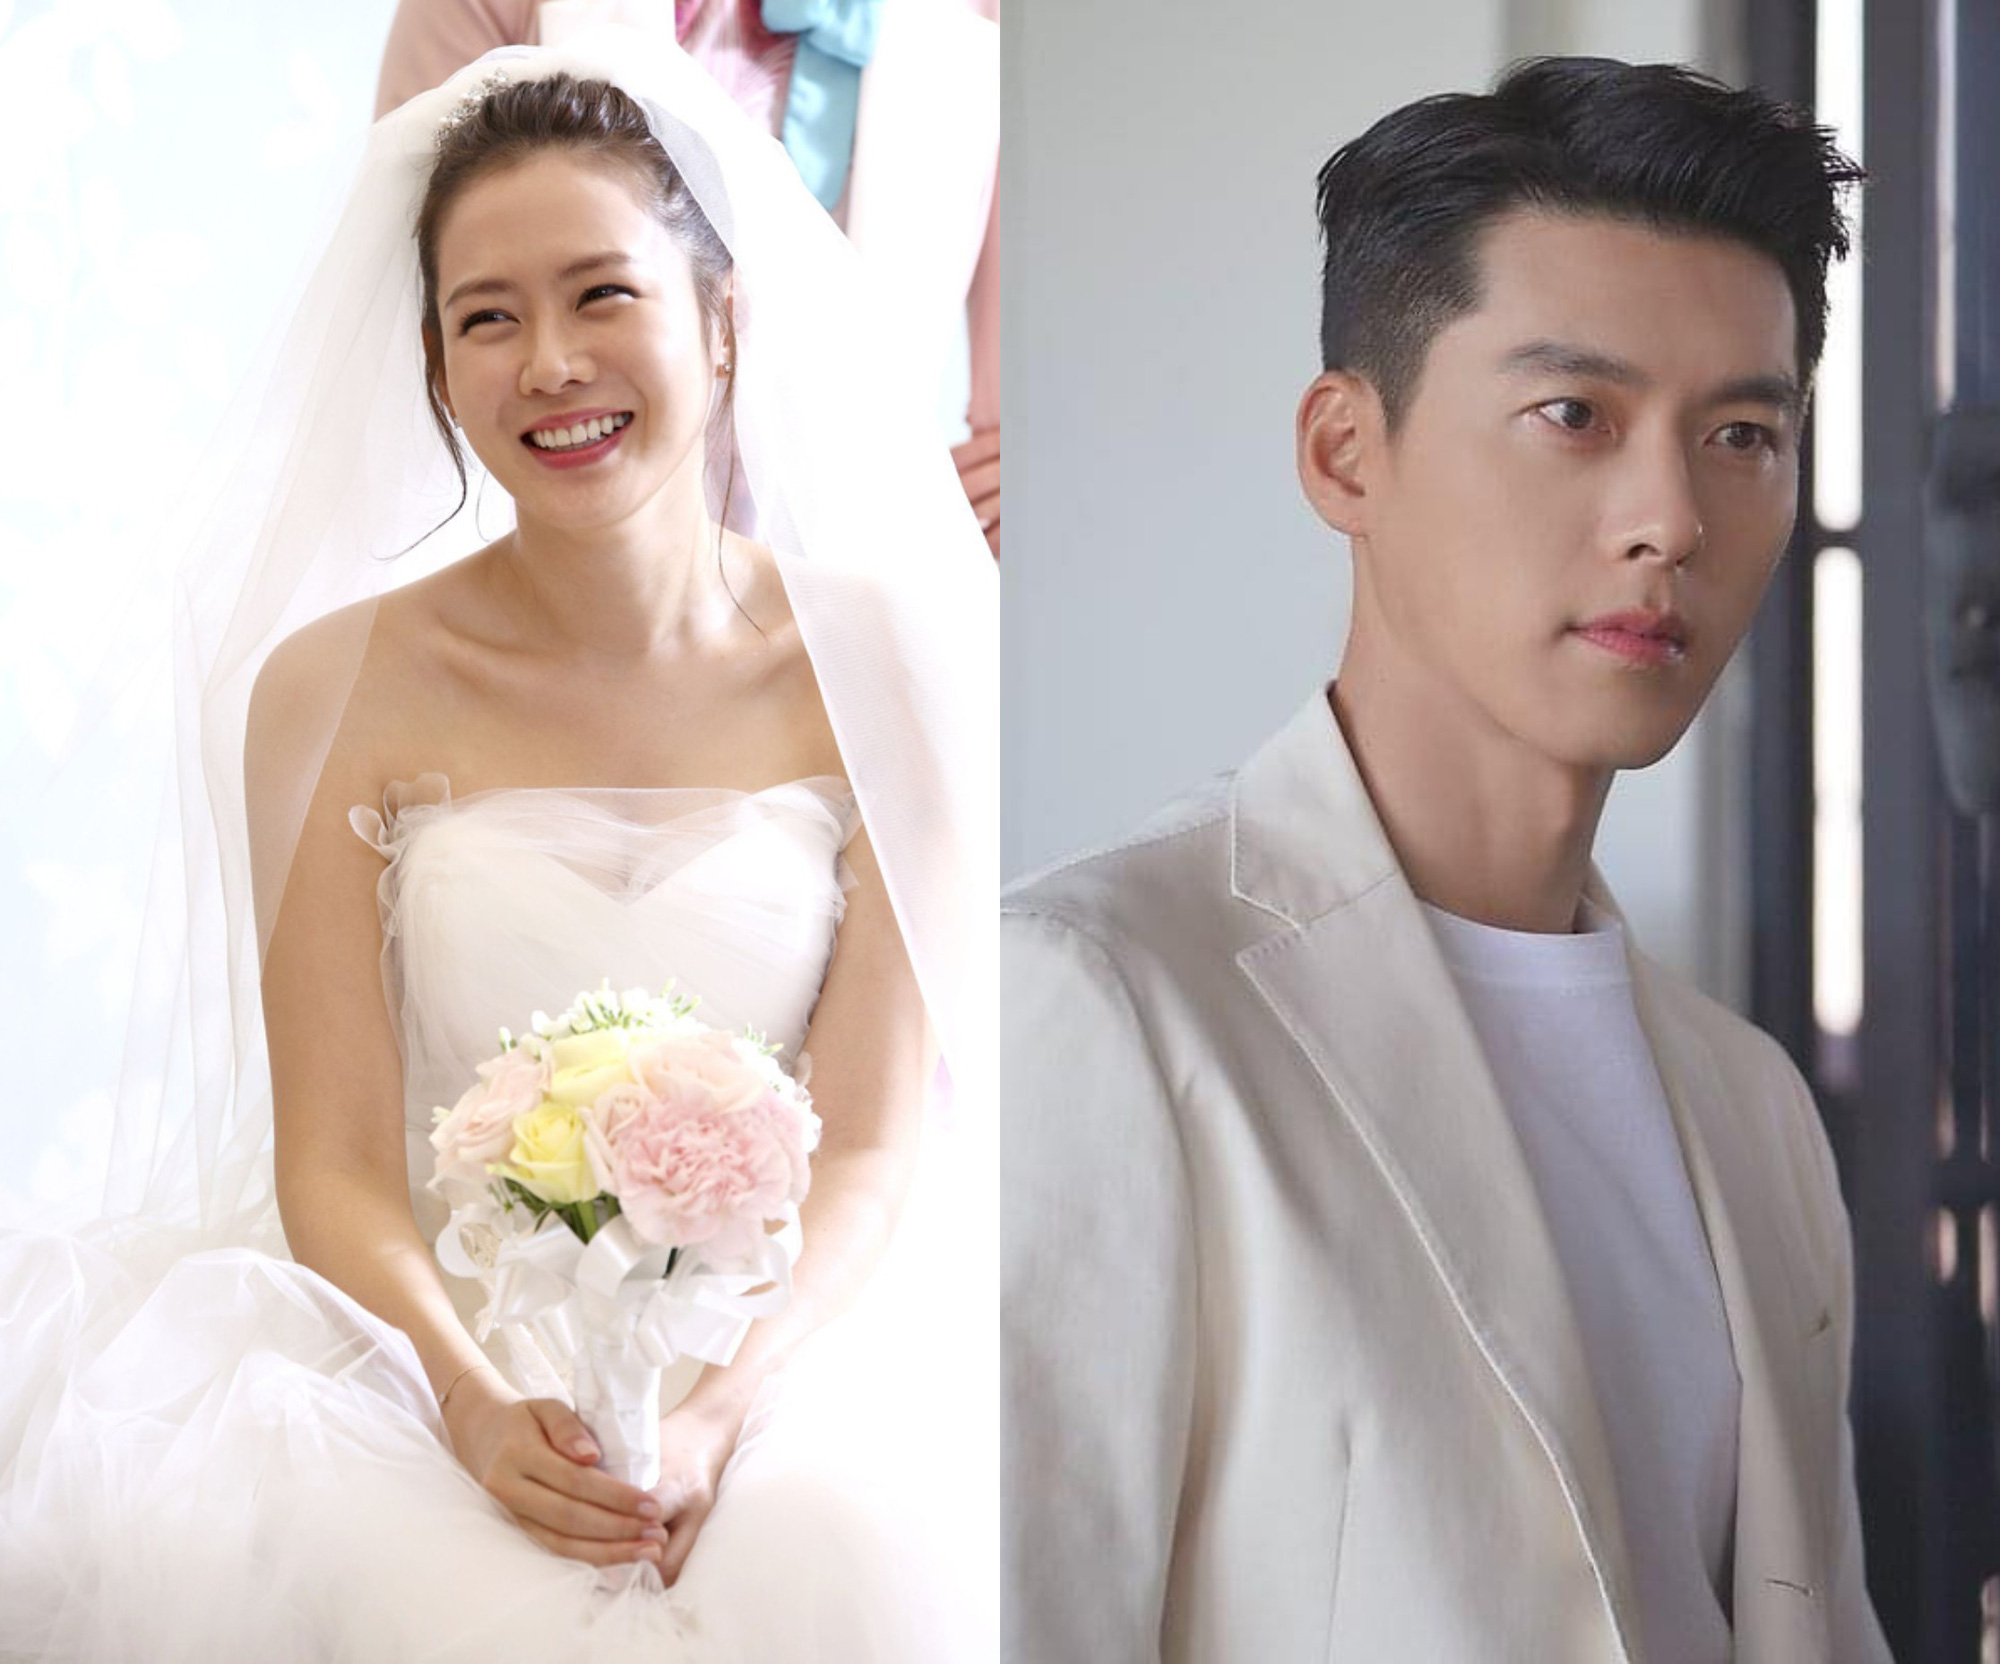 Bạn đang tò mò về đám cưới của cặp đôi đình đám Hyun Bin và Son Ye Jin? Hãy tham khảo ngay thông tin về đám cưới này để không bỏ lỡ bất kỳ chi tiết nào của sự kiện đấy nhé!